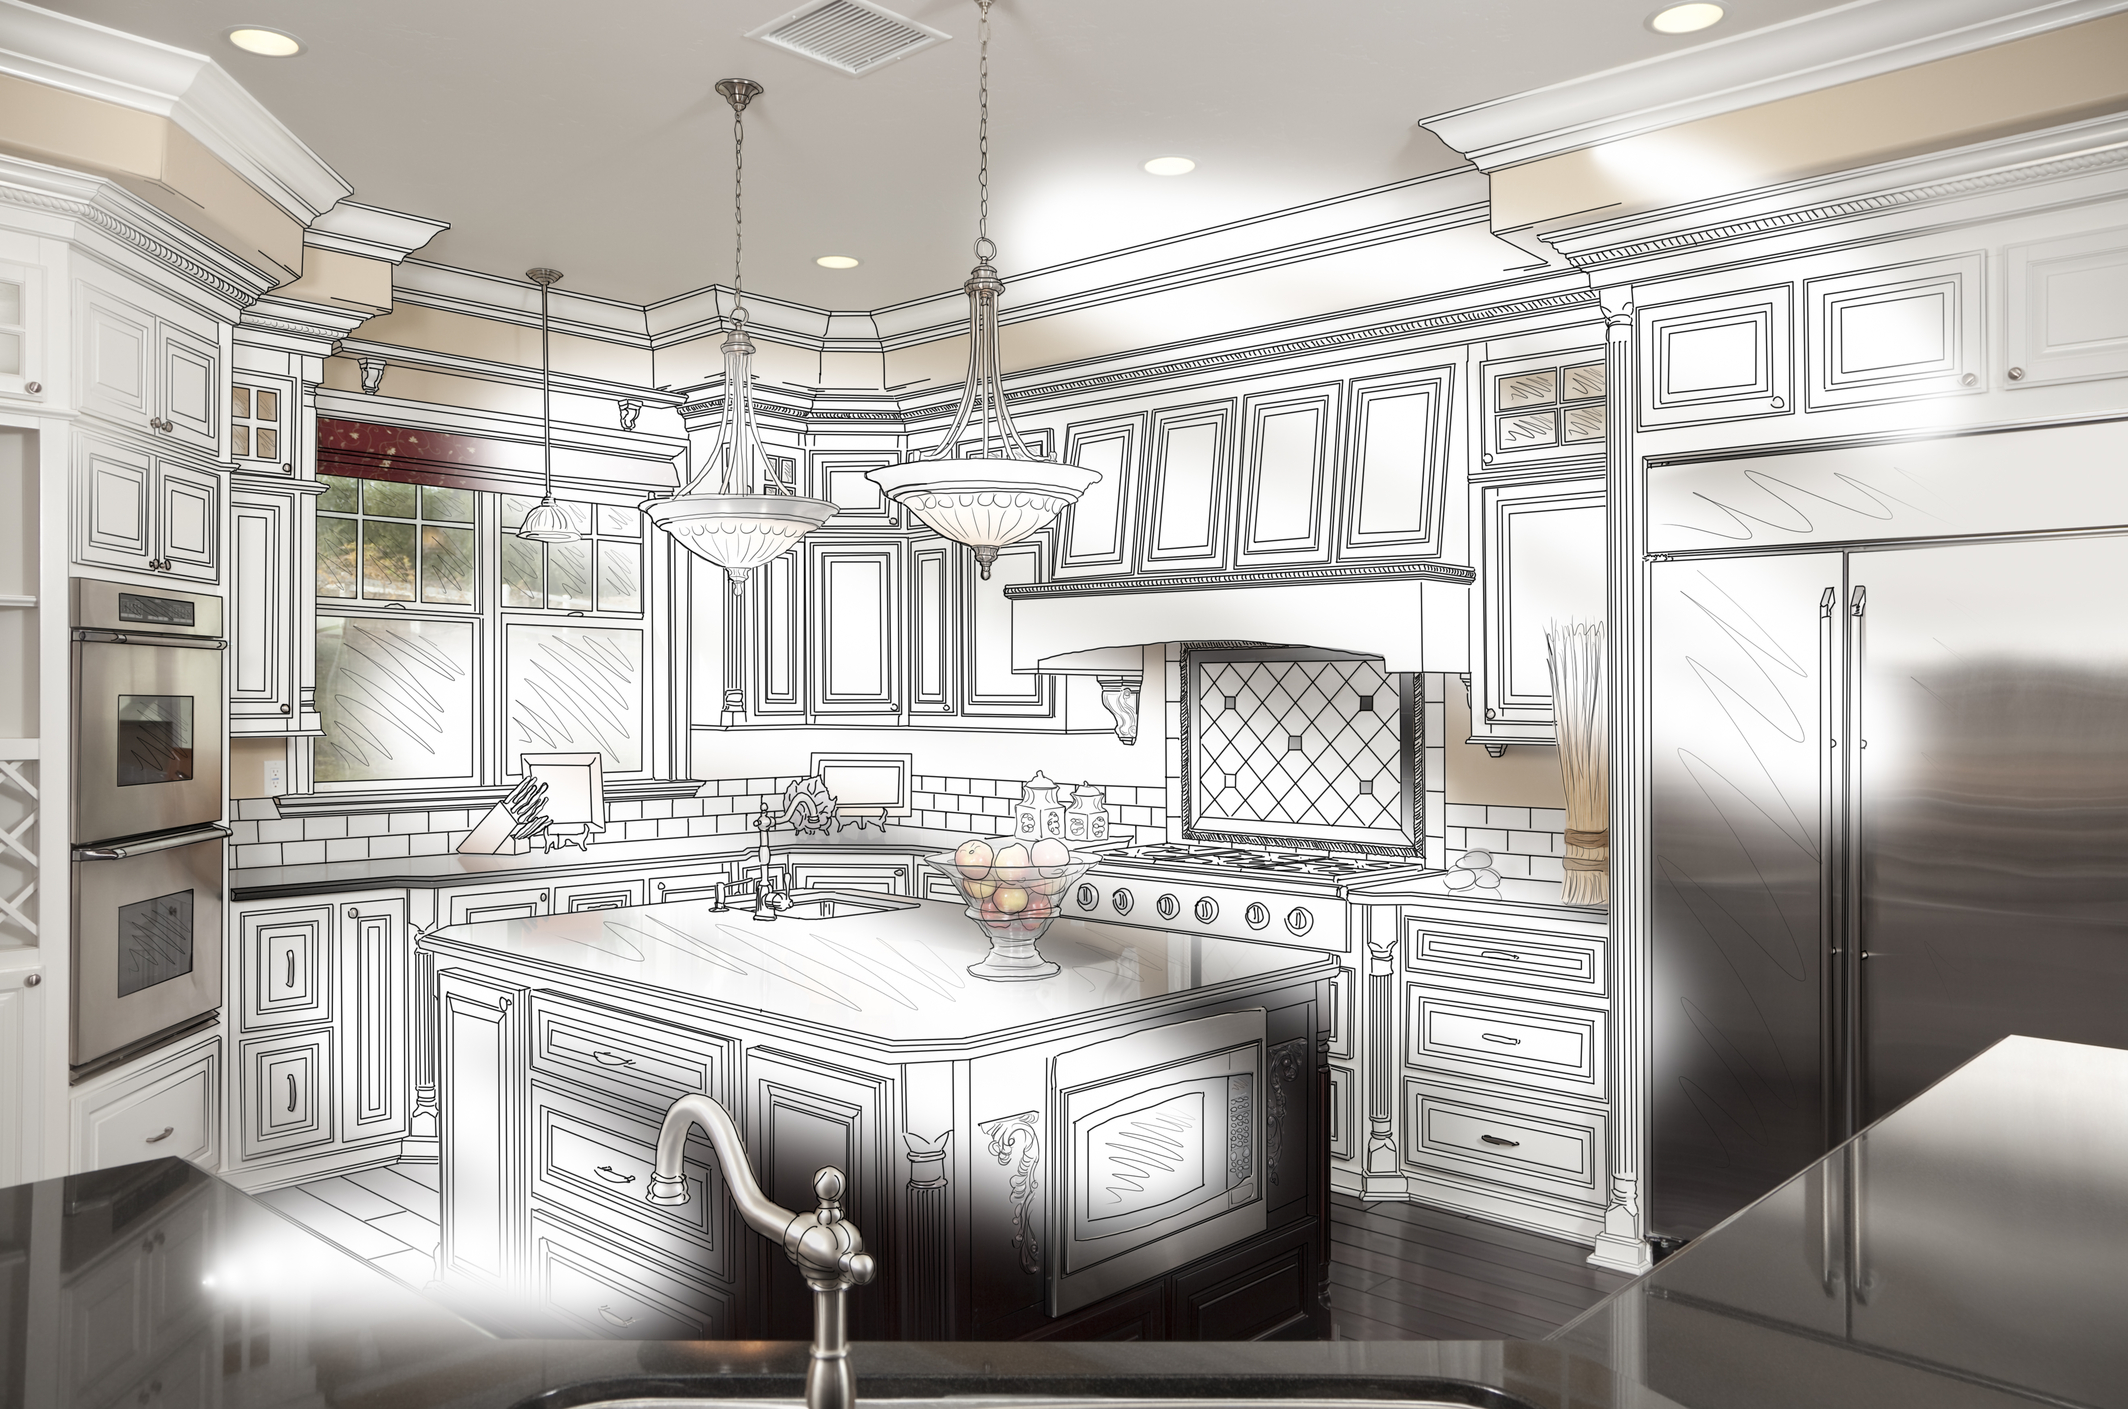 Kitchen Design Bradenton | Schrader Home Improvement Specialist 941-962